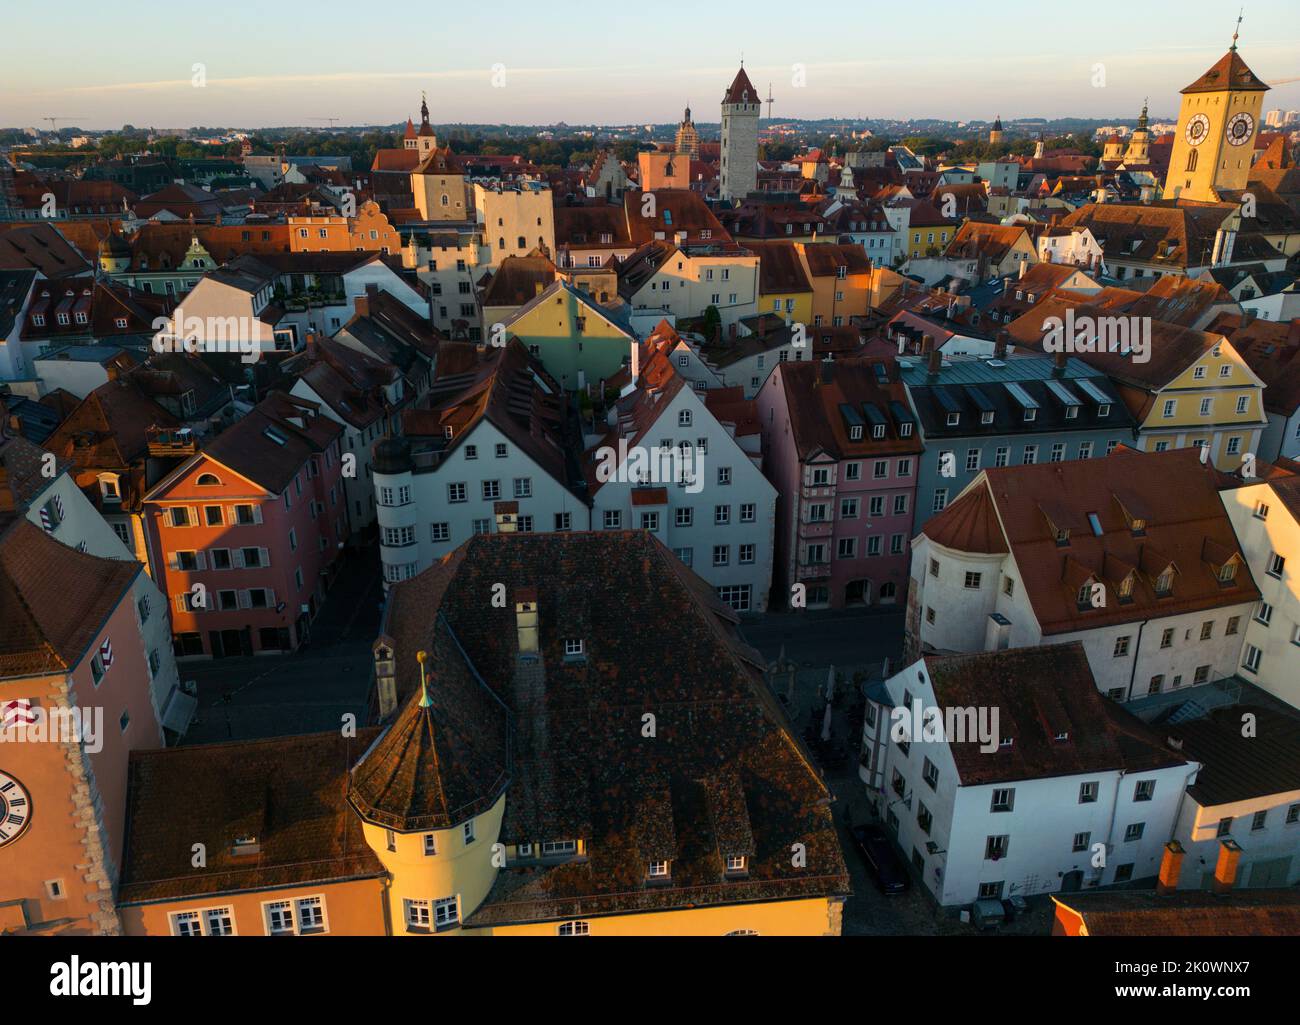 5th 2022 de septiembre, Regensburg, Alemania. Disparo en avión del casco antiguo medieval de la ciudad desde arriba. Foto de stock